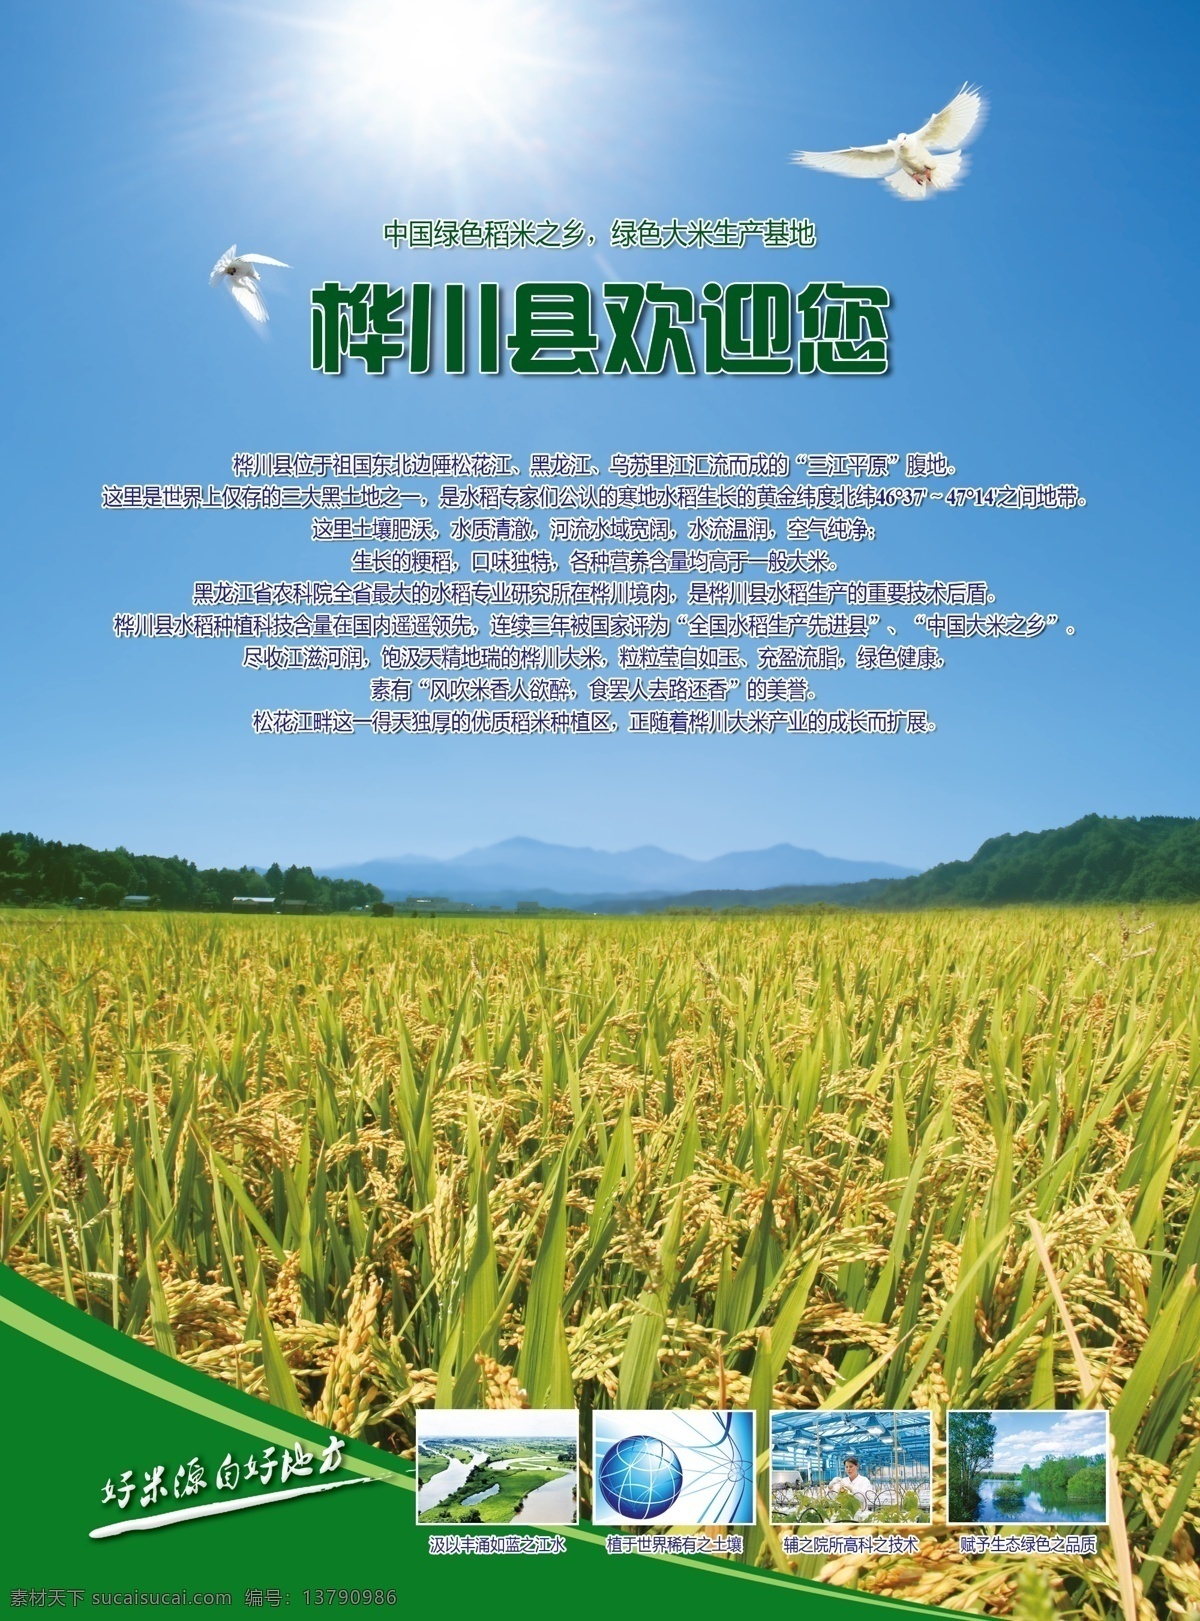 绿色稻米之乡 桦川 绿色 稻米之乡 水稻 大米 田野 原创设计 dm宣传单 广告设计模板 源文件